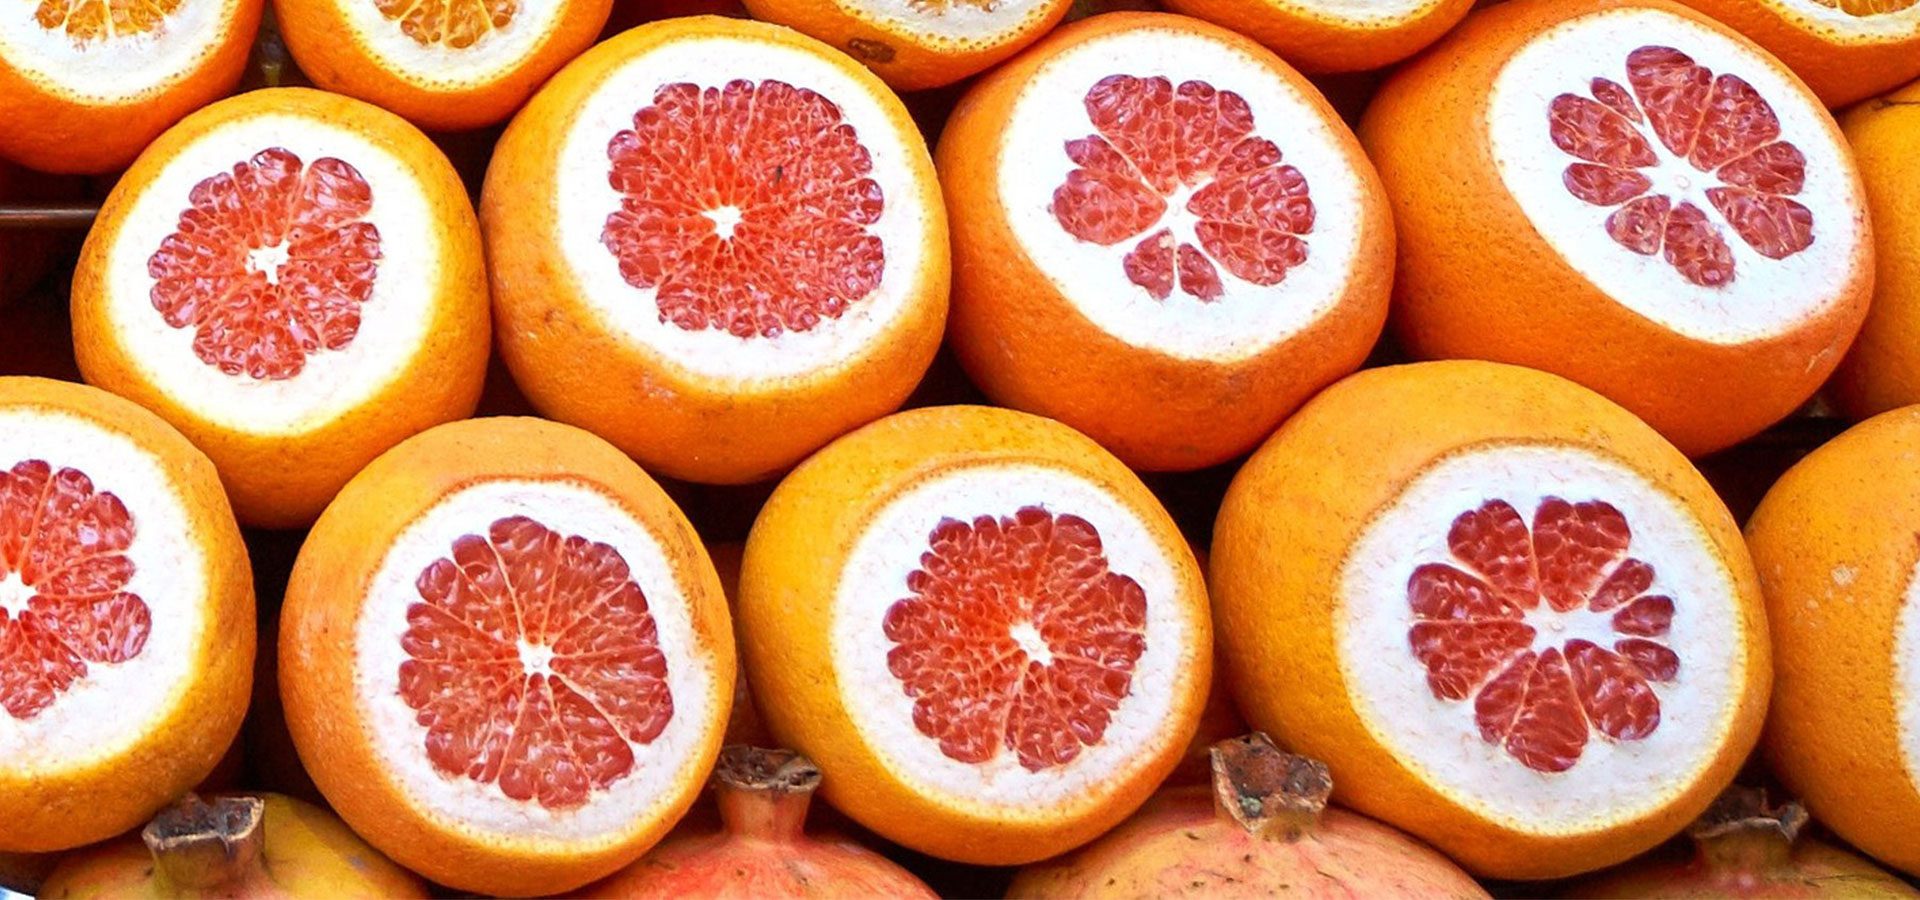 health benefits of grapefruit oil